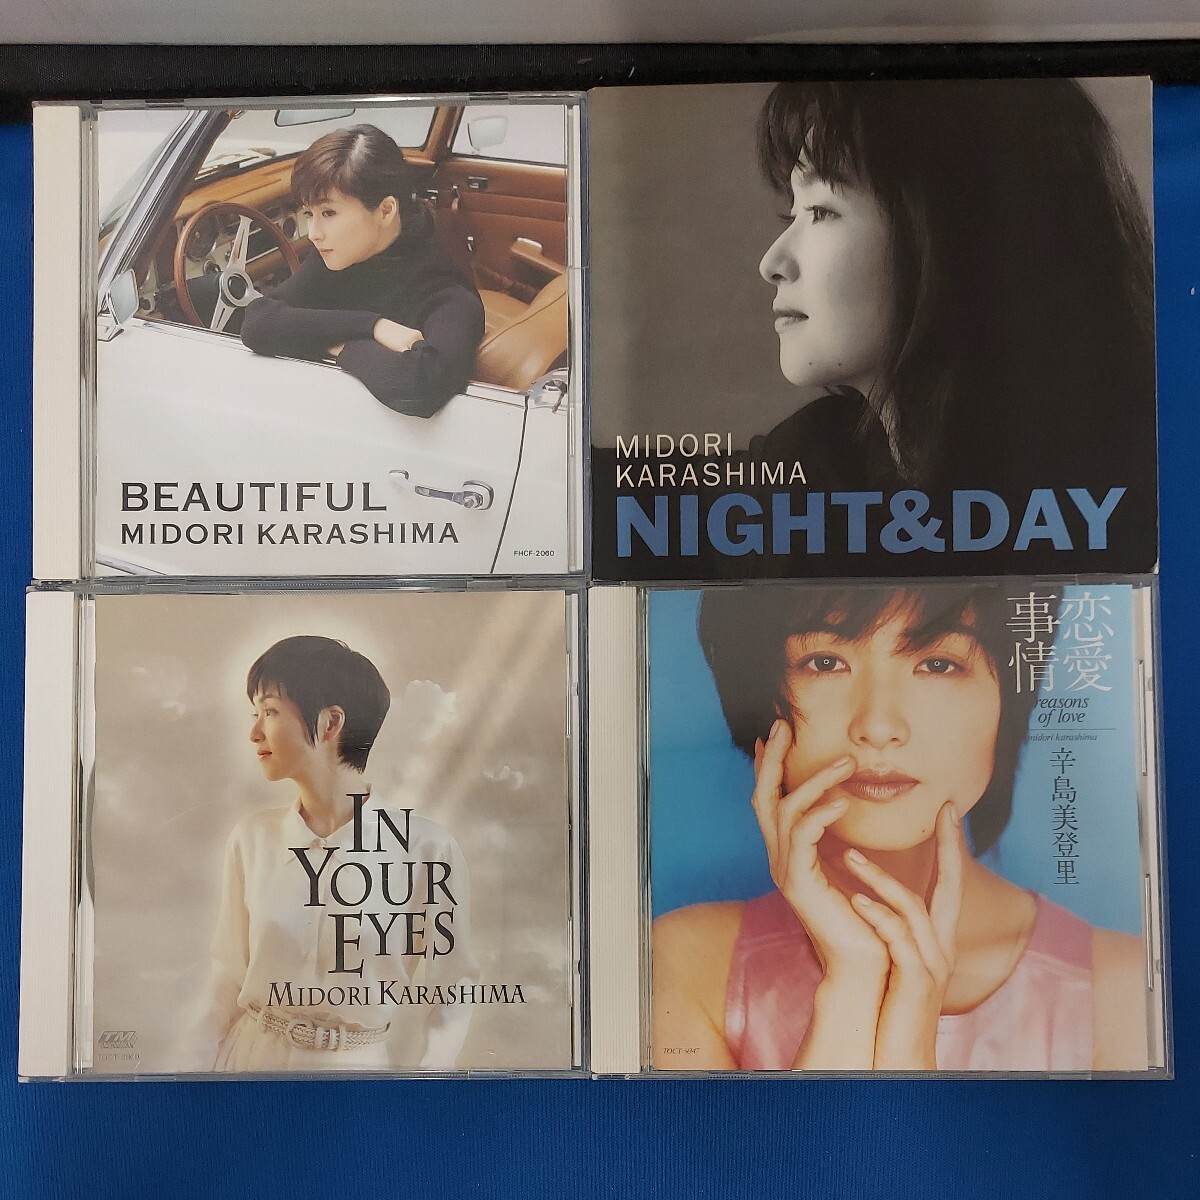 * прекрасный товар .. Karashima Midori CD альбом 14 позиций комплект *Good Afternoon/GREEN/Gently/BIRTHDAY/BEAUTIFUL/IN YOUR EYES/NIGHT&DAY/ любовь обстоятельства / плоды *